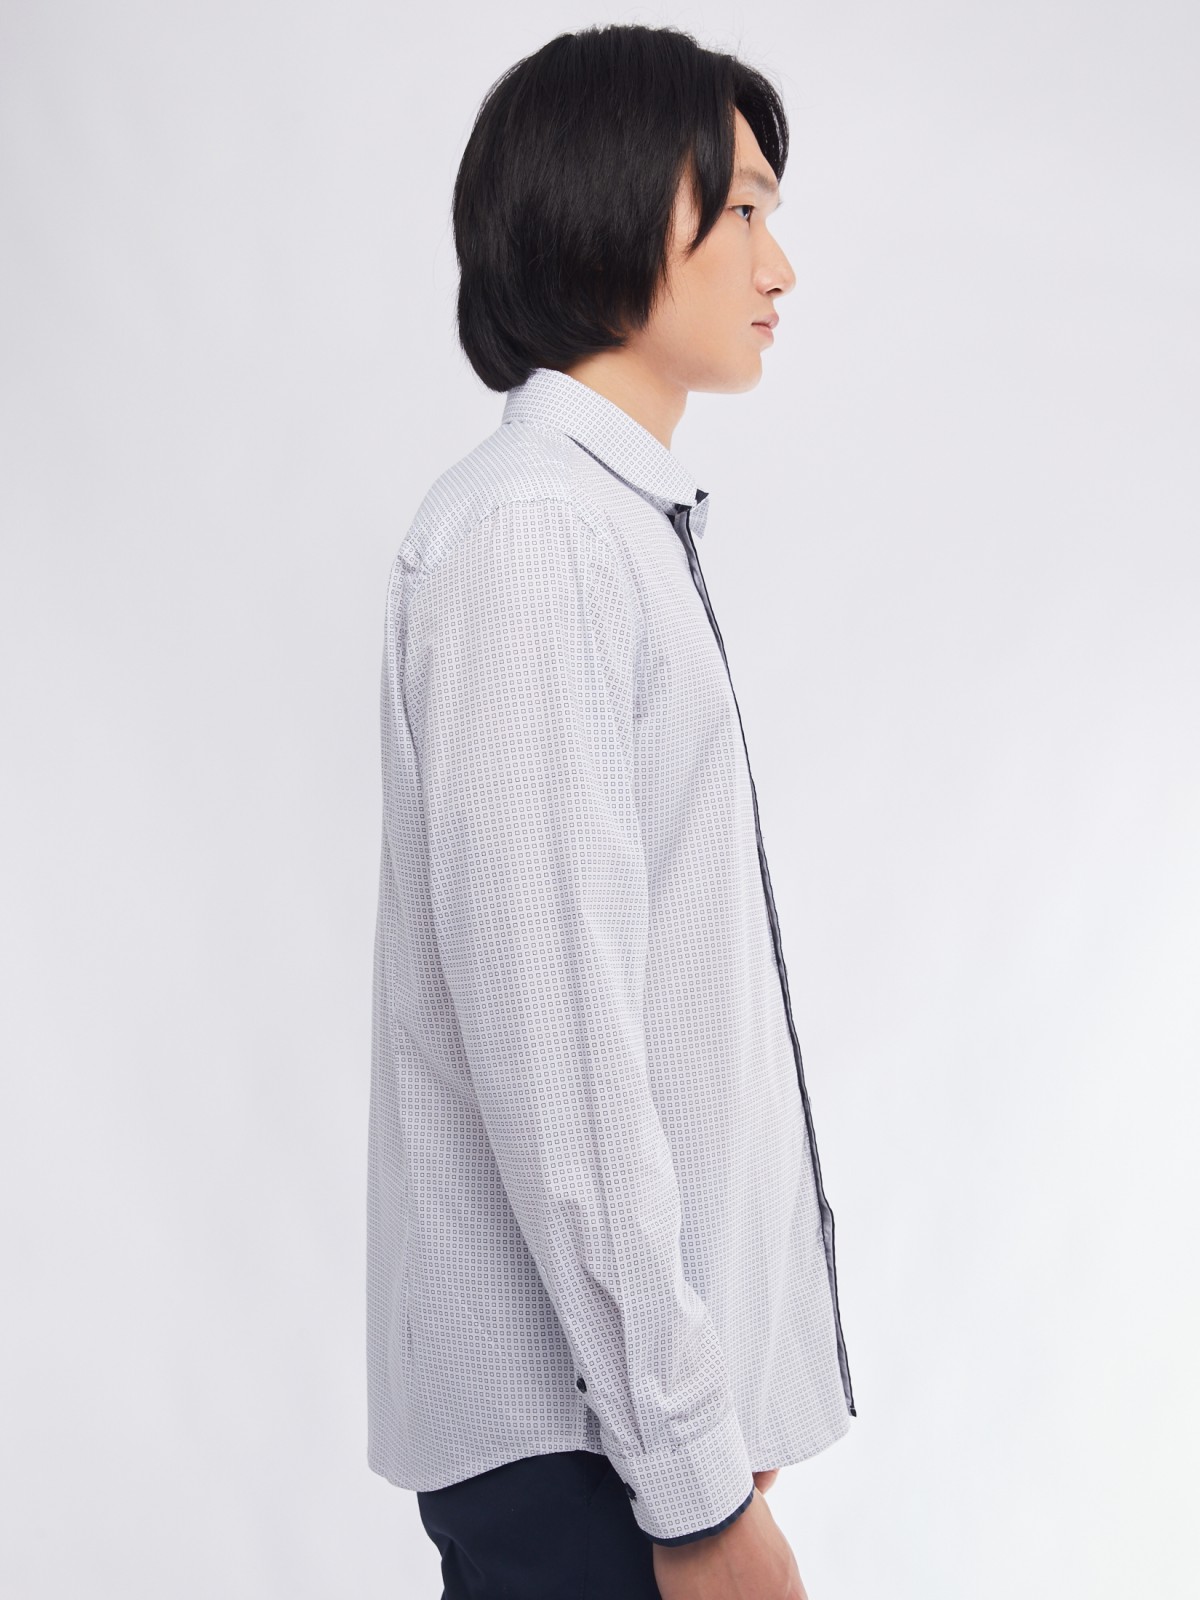 Офисная полуприталенная рубашка с мелким принтом zolla 01411217Y033, цвет белый, размер M - фото 5